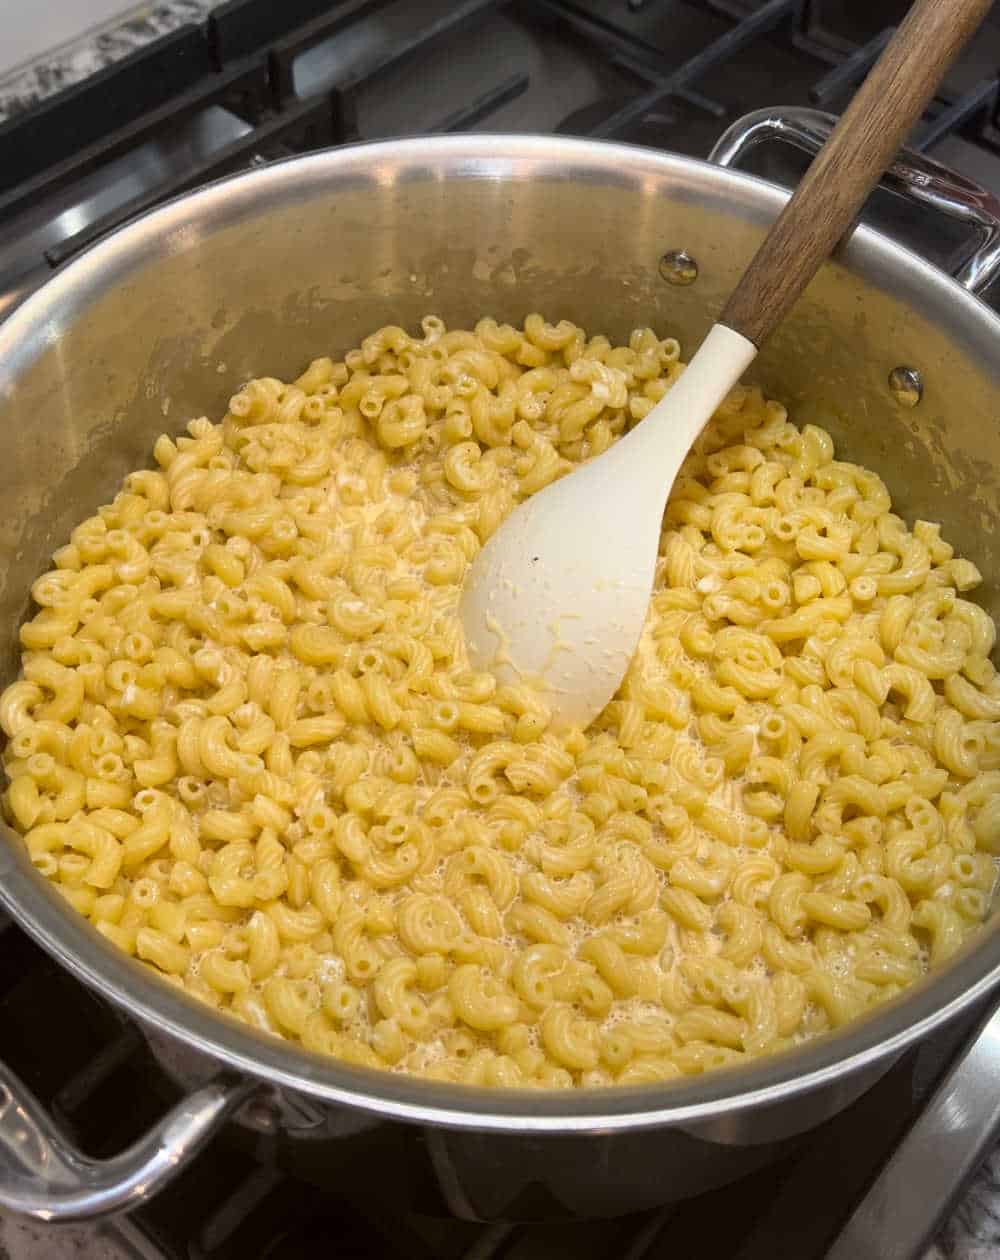 macaroni in creamy sauce on stove.